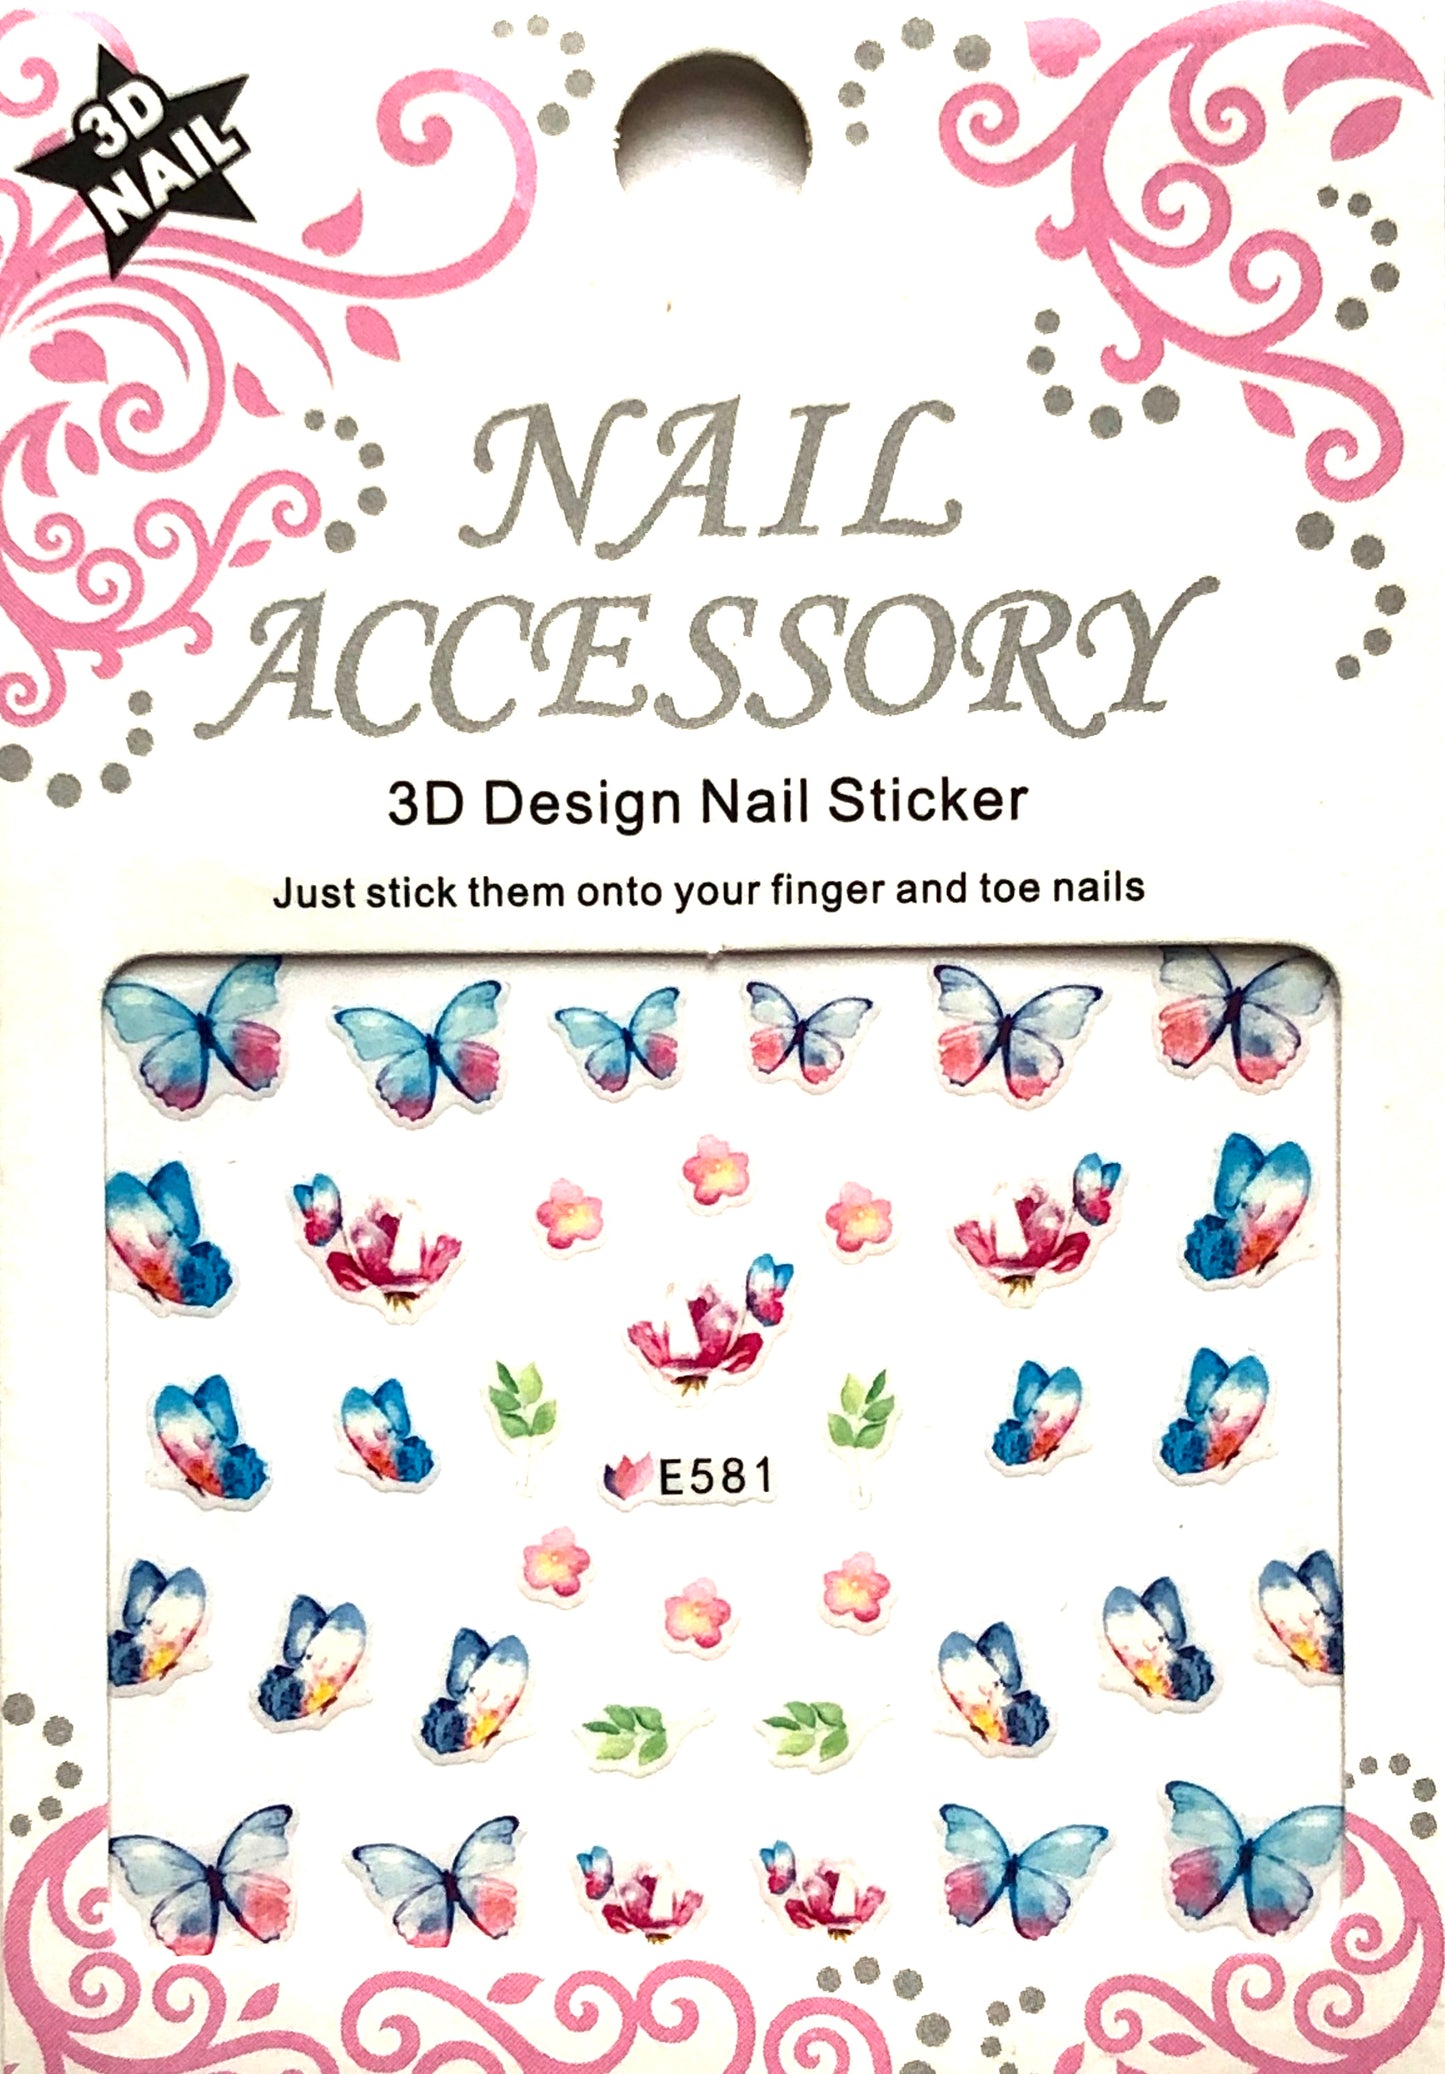 Butterfly 3D Design Nail Sticker (Mariposas) E-578 - E583